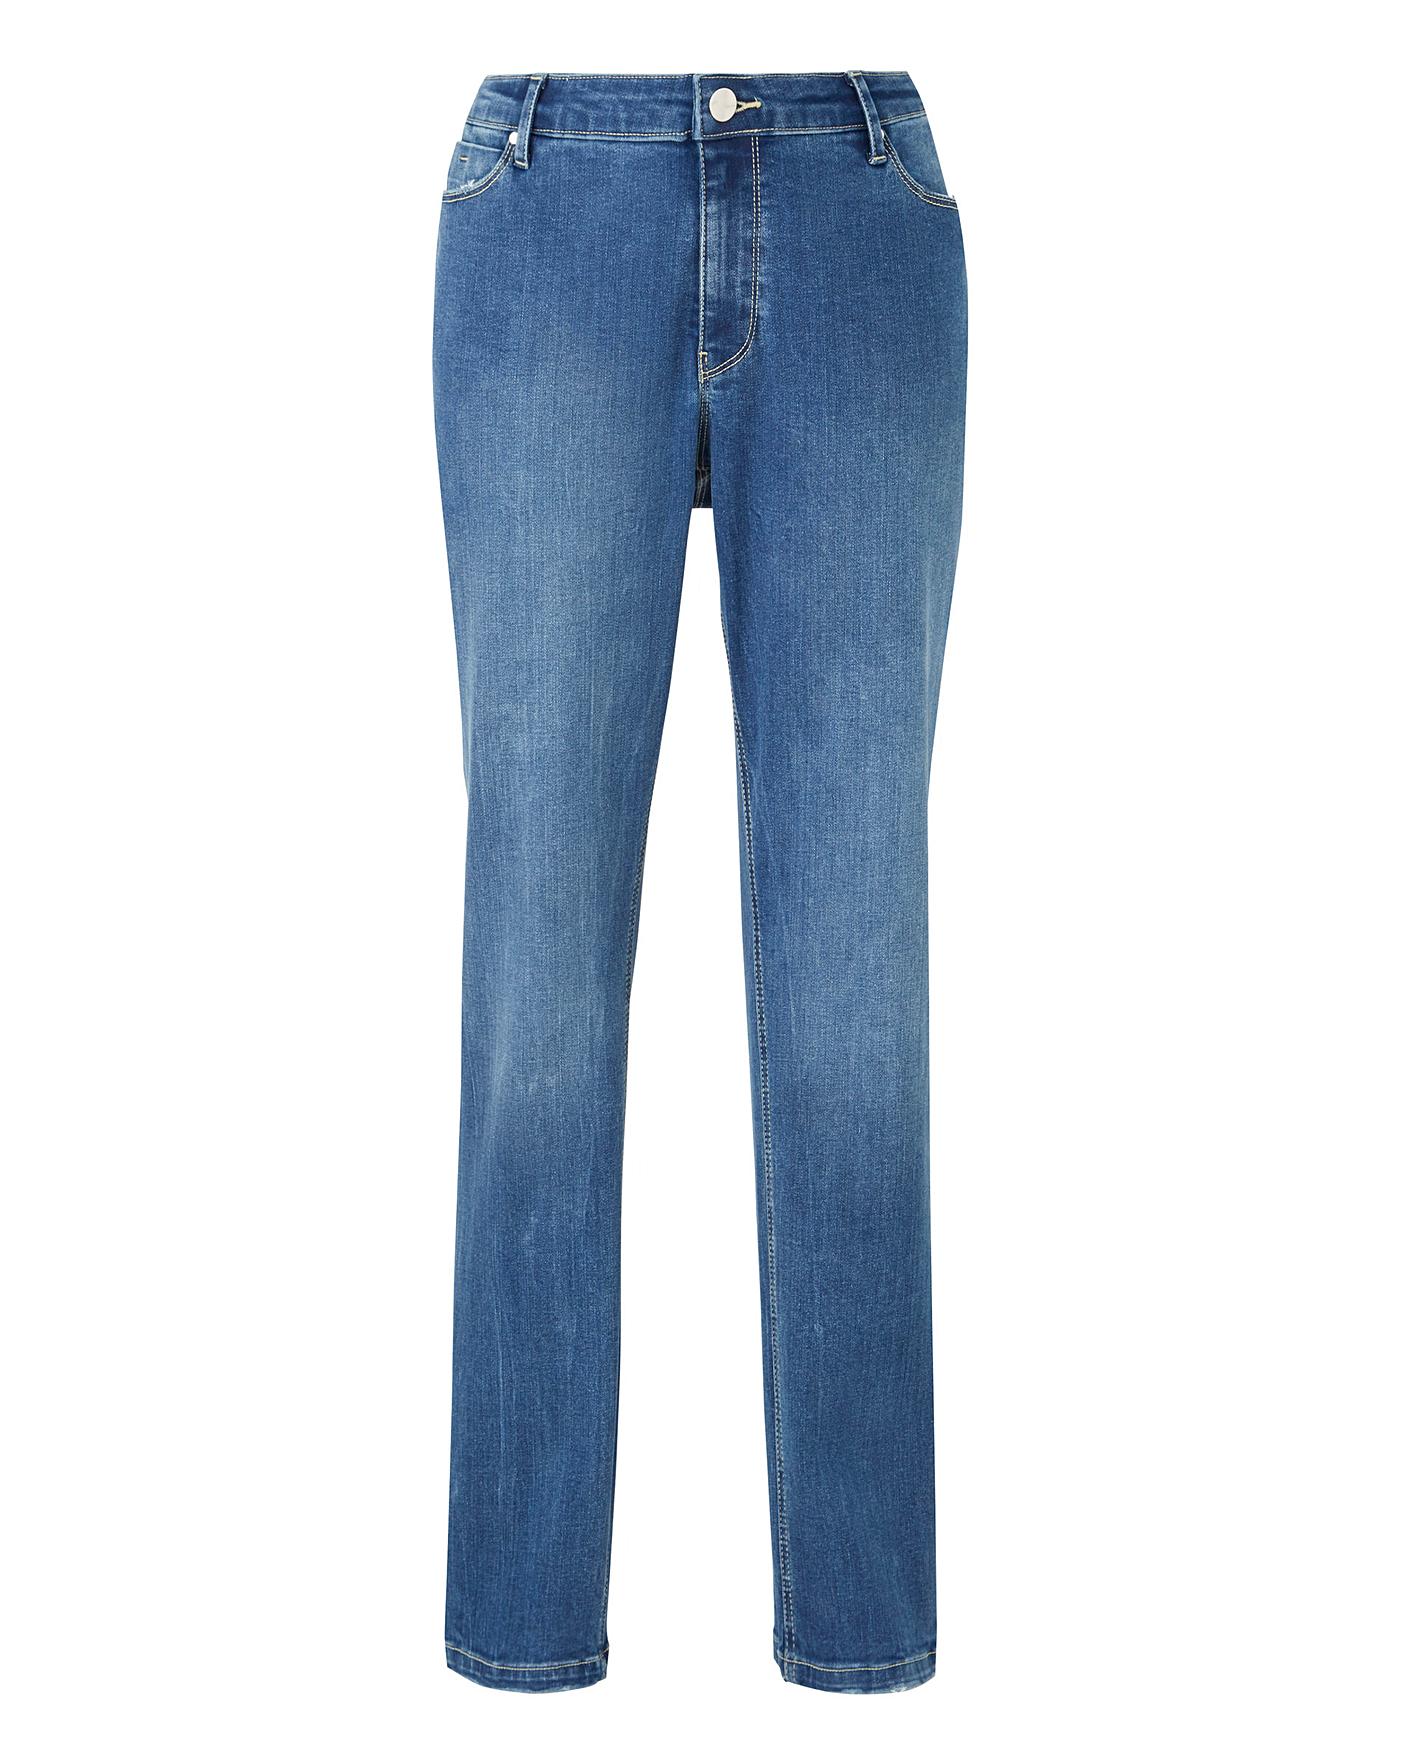 Blue Sadie Slim Leg Jeans Short Length | J D Williams